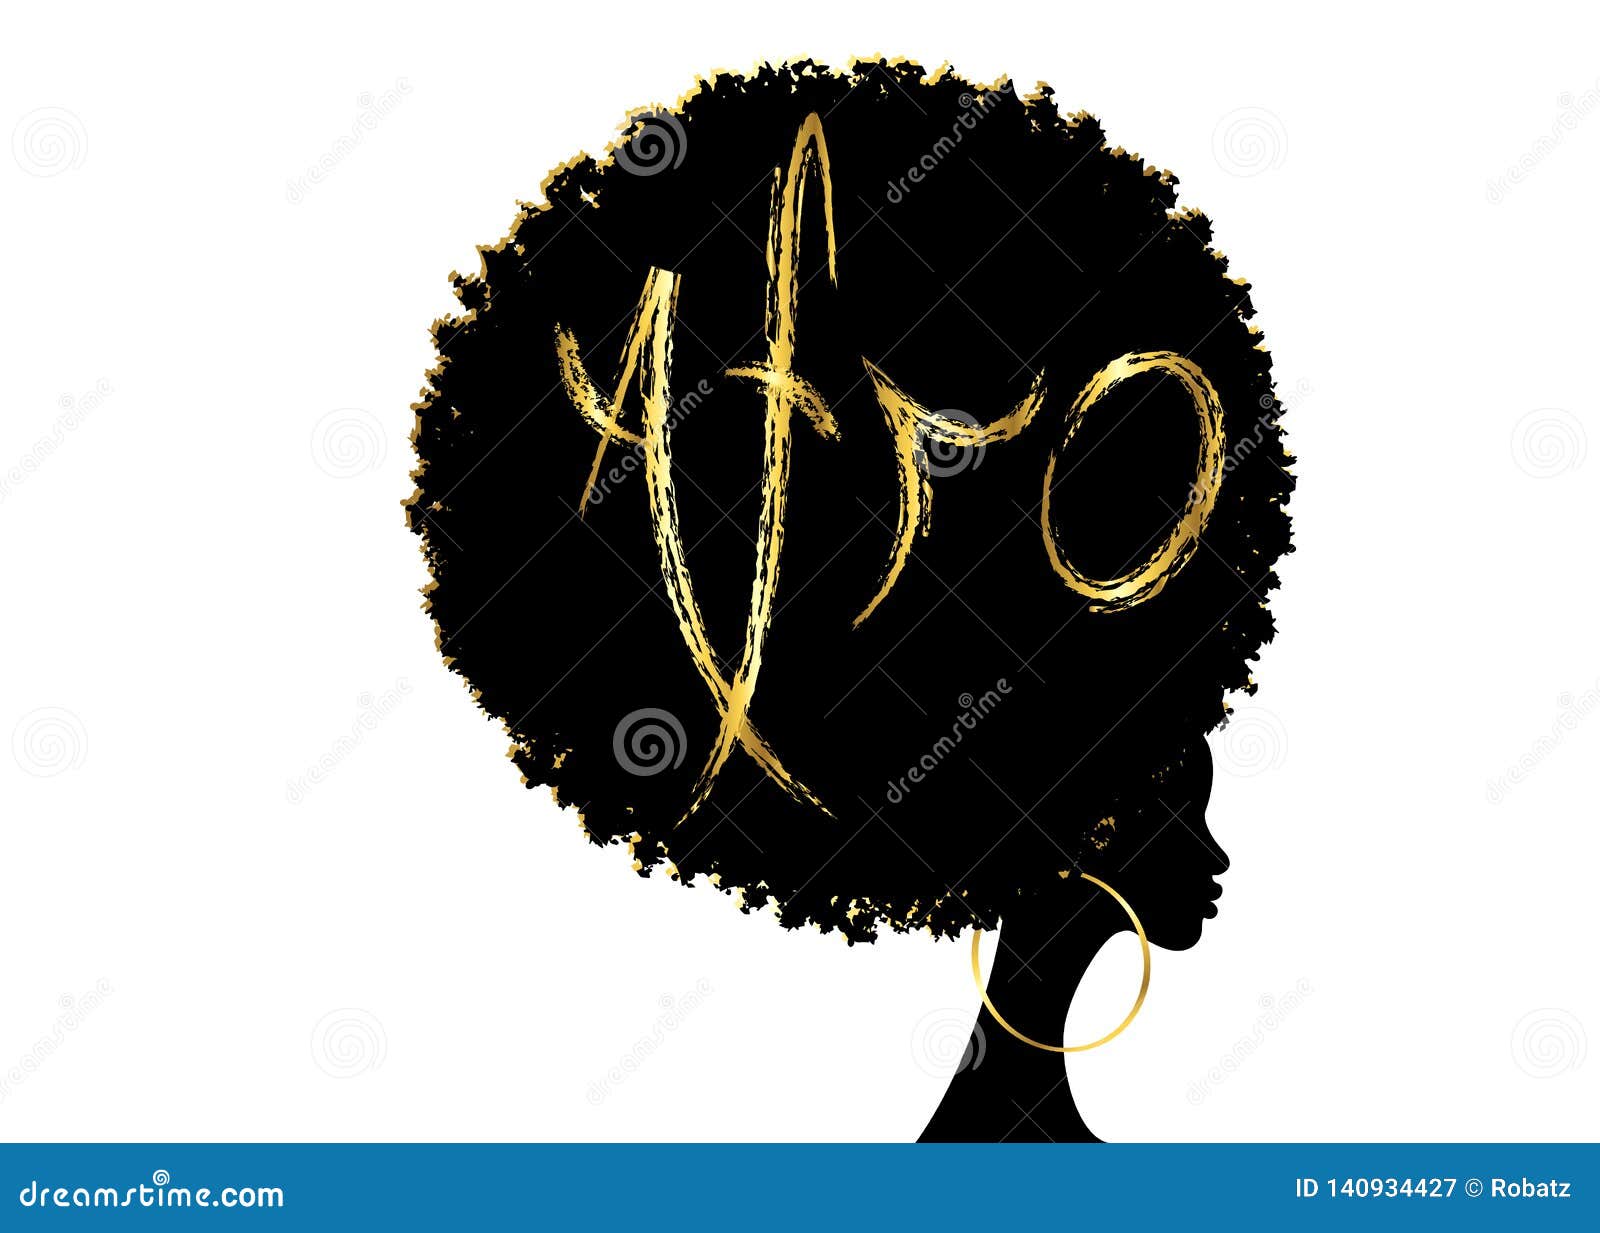 Курчавые афро волосы, женщины портрета африканские, сторона темной кожи женская с афро вьющиеся волосы, этническими традиционными. Курчавые афро волосы, женщины портрета африканские, сторона темной кожи женская с афро вьющиеся волосы, этнические традиционные золотые серьги, концепция прически, grunge Афро предпосылка текста золота, изолированной или белой